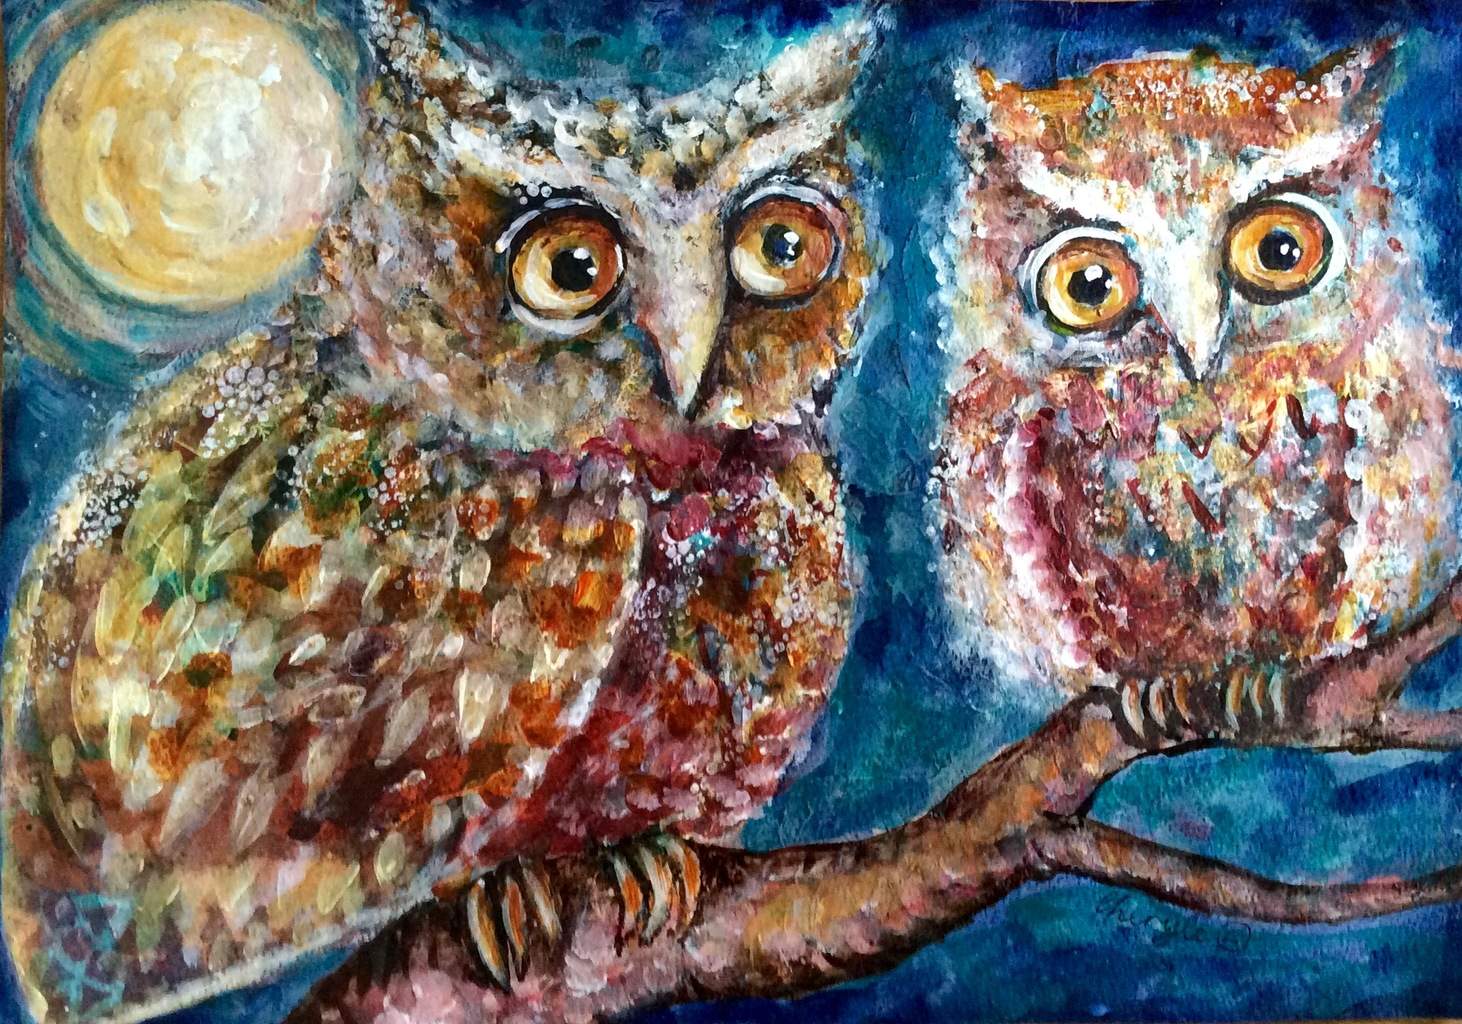 Owl Wisdom